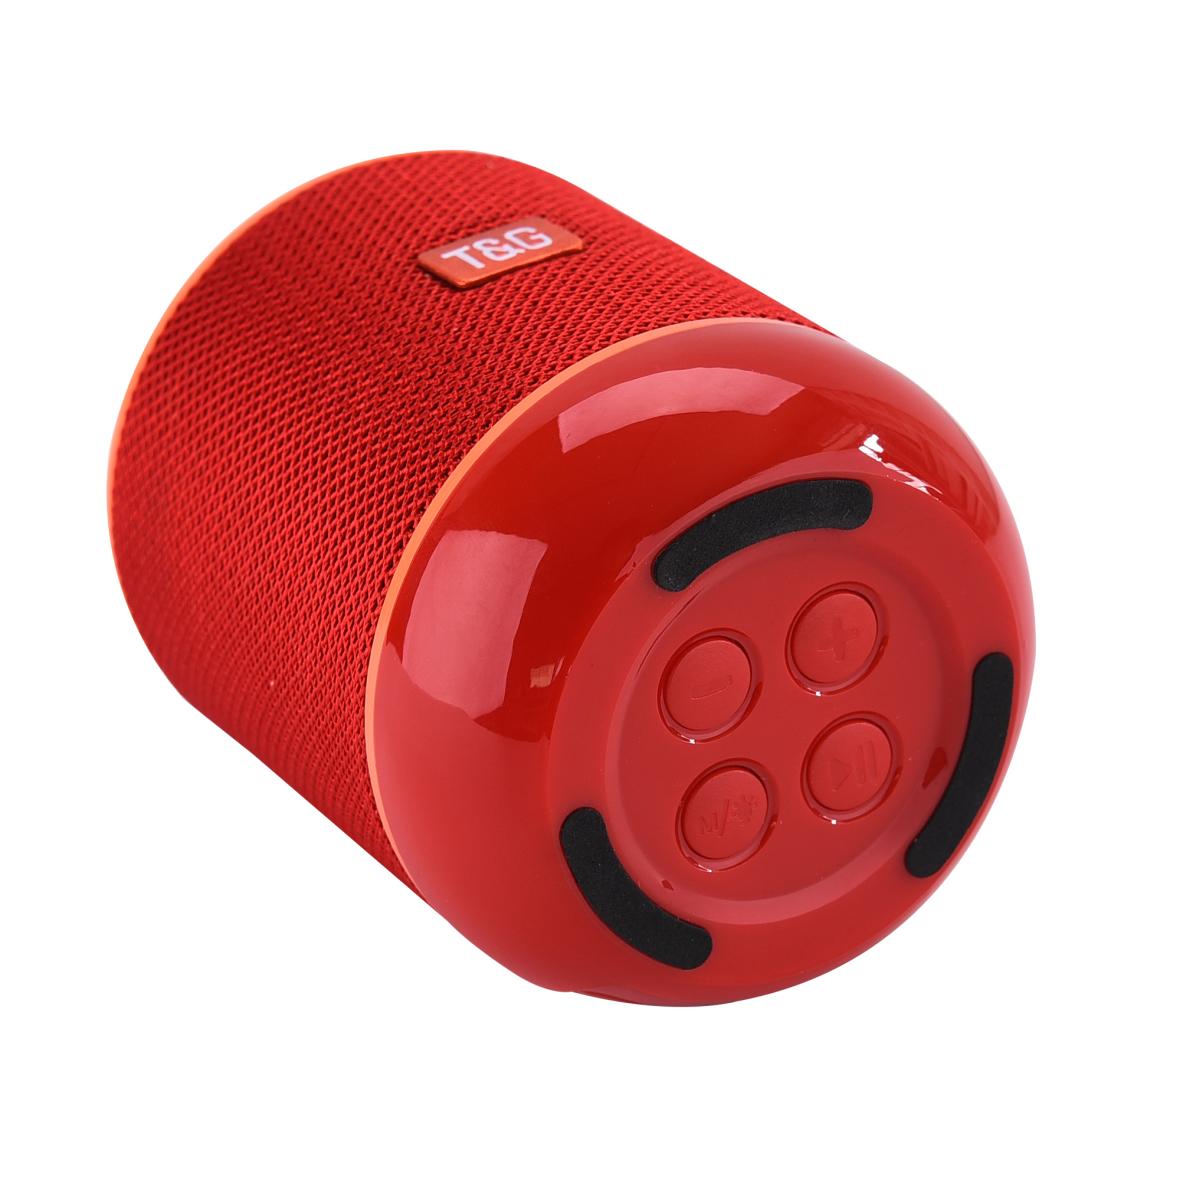 ลำโพงบลูทูธ TG605 Wireless Bluetooth Speaker มีไฟ/วางโทรศัพท์ได้